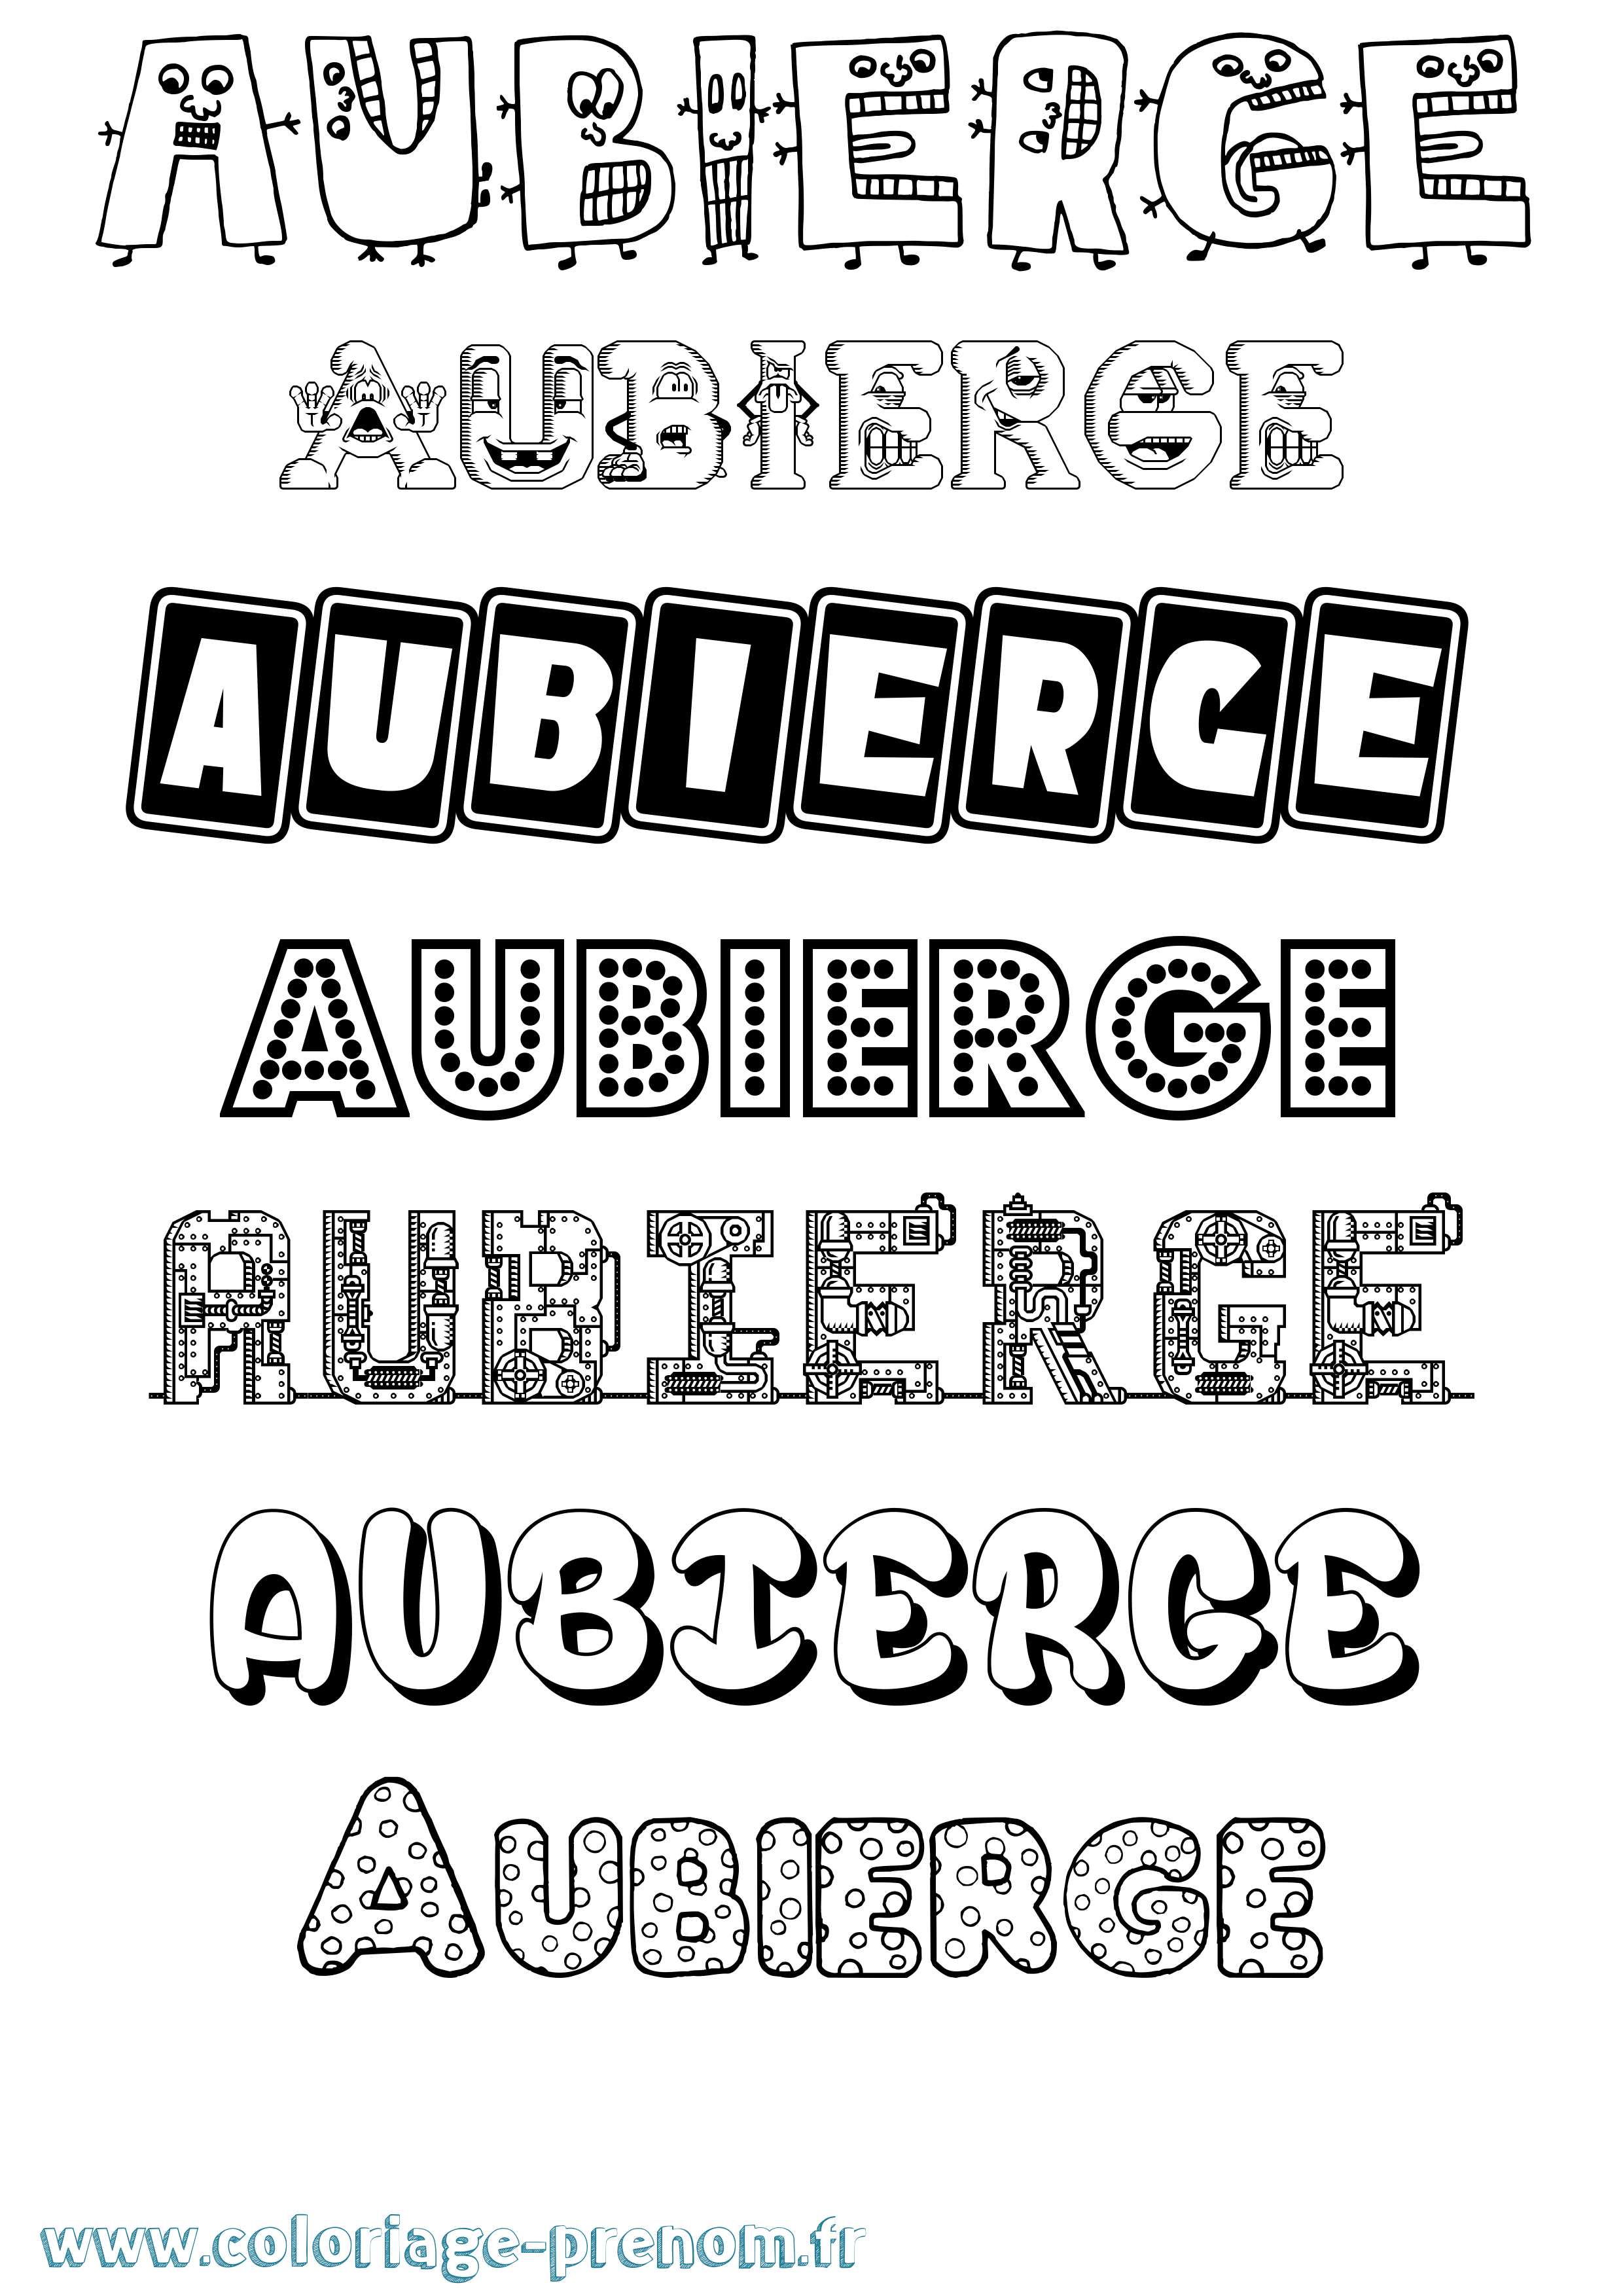 Coloriage prénom Aubierge Fun